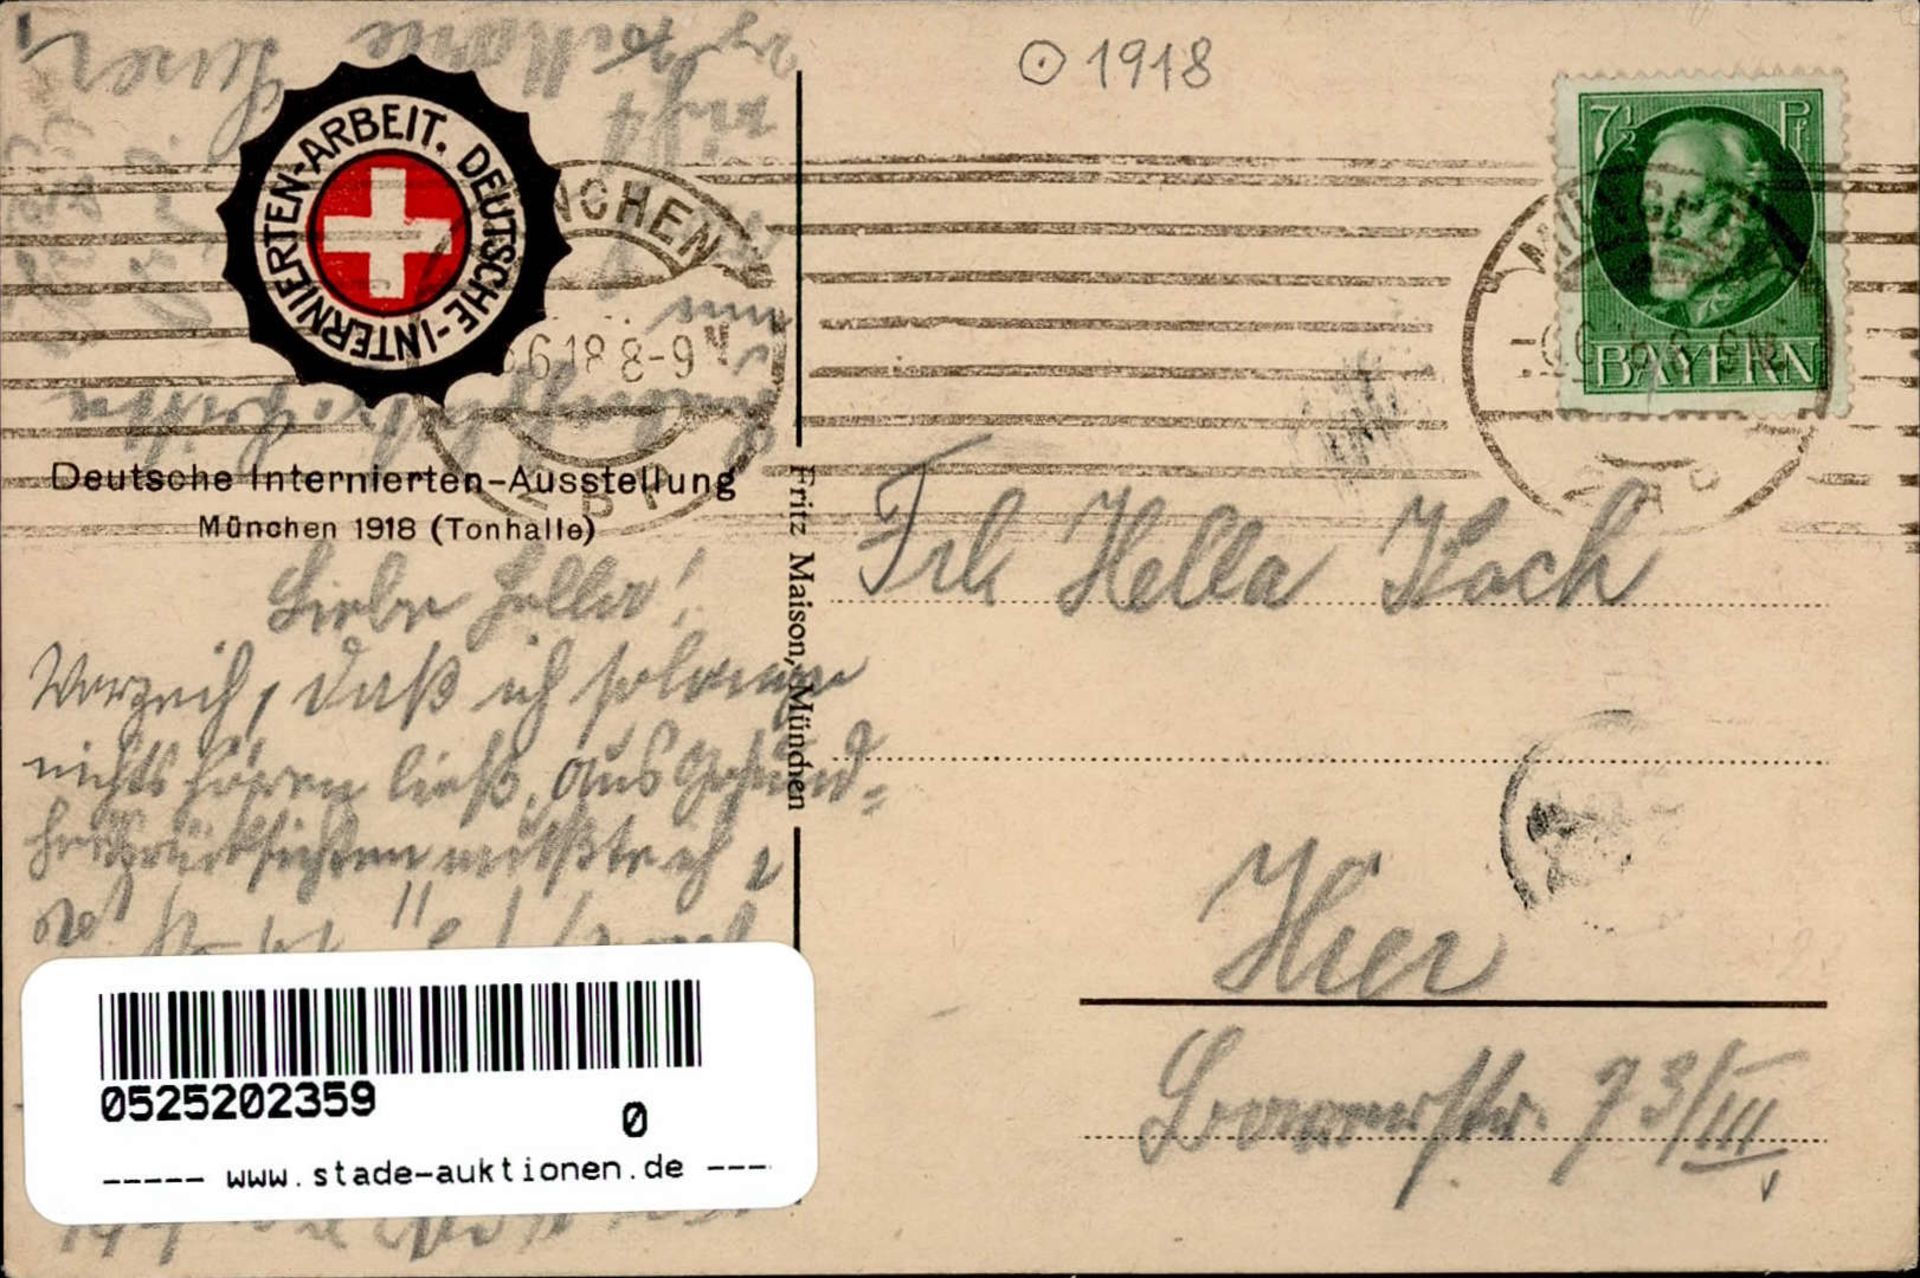 Hohlwein, Ludwig München Deutsche Internierten Ausstellung 1918 signiert I-II - Image 2 of 2